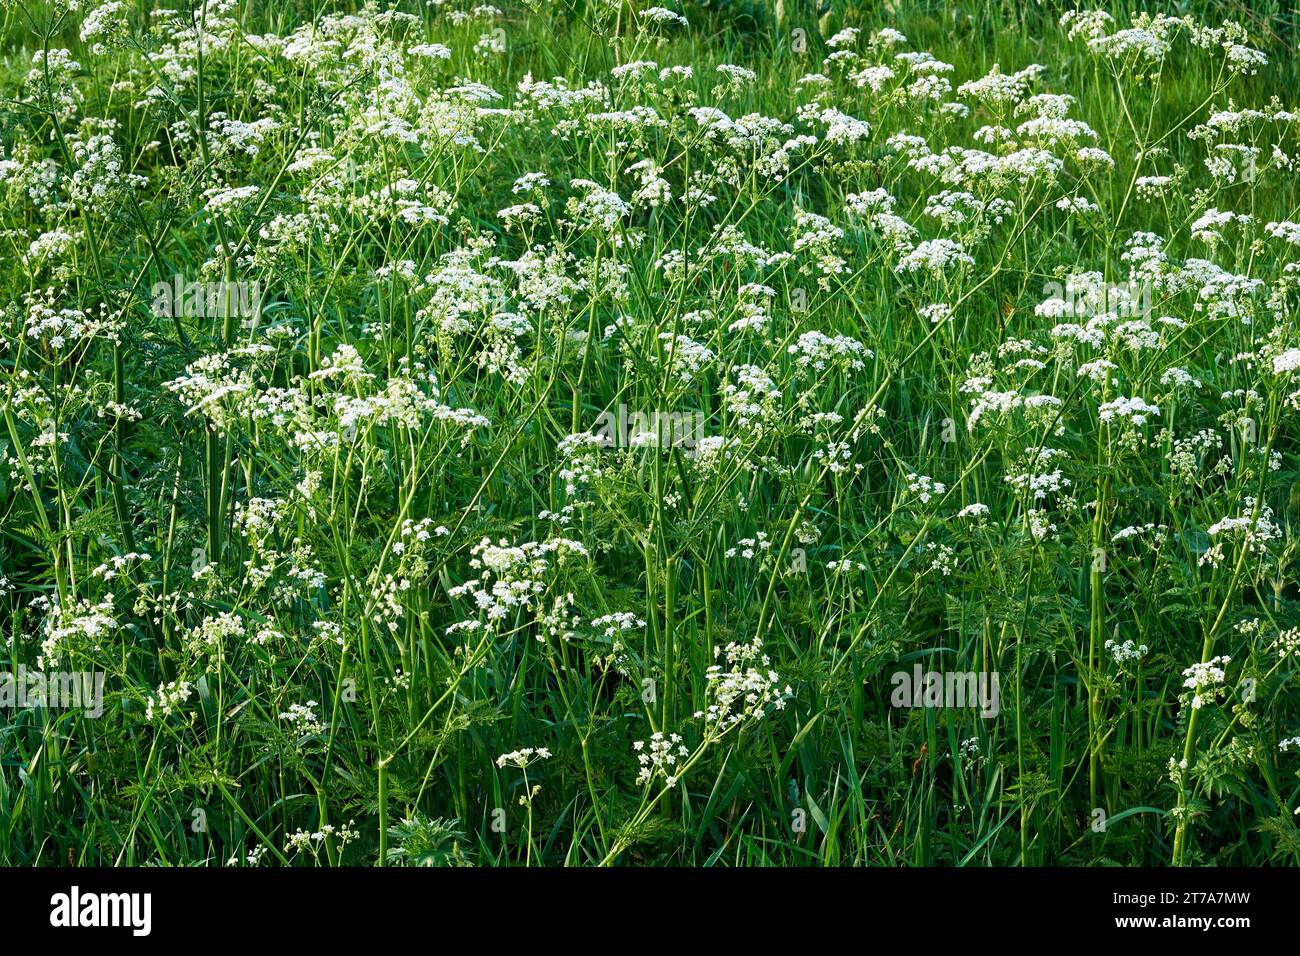 Ein Feld mit weißen Blüten mit grünen Stielen und Blättern. Anthriscus sylvestris, bekannt als KuhPetersilie. Kleine weiße Blumen. Stockfoto